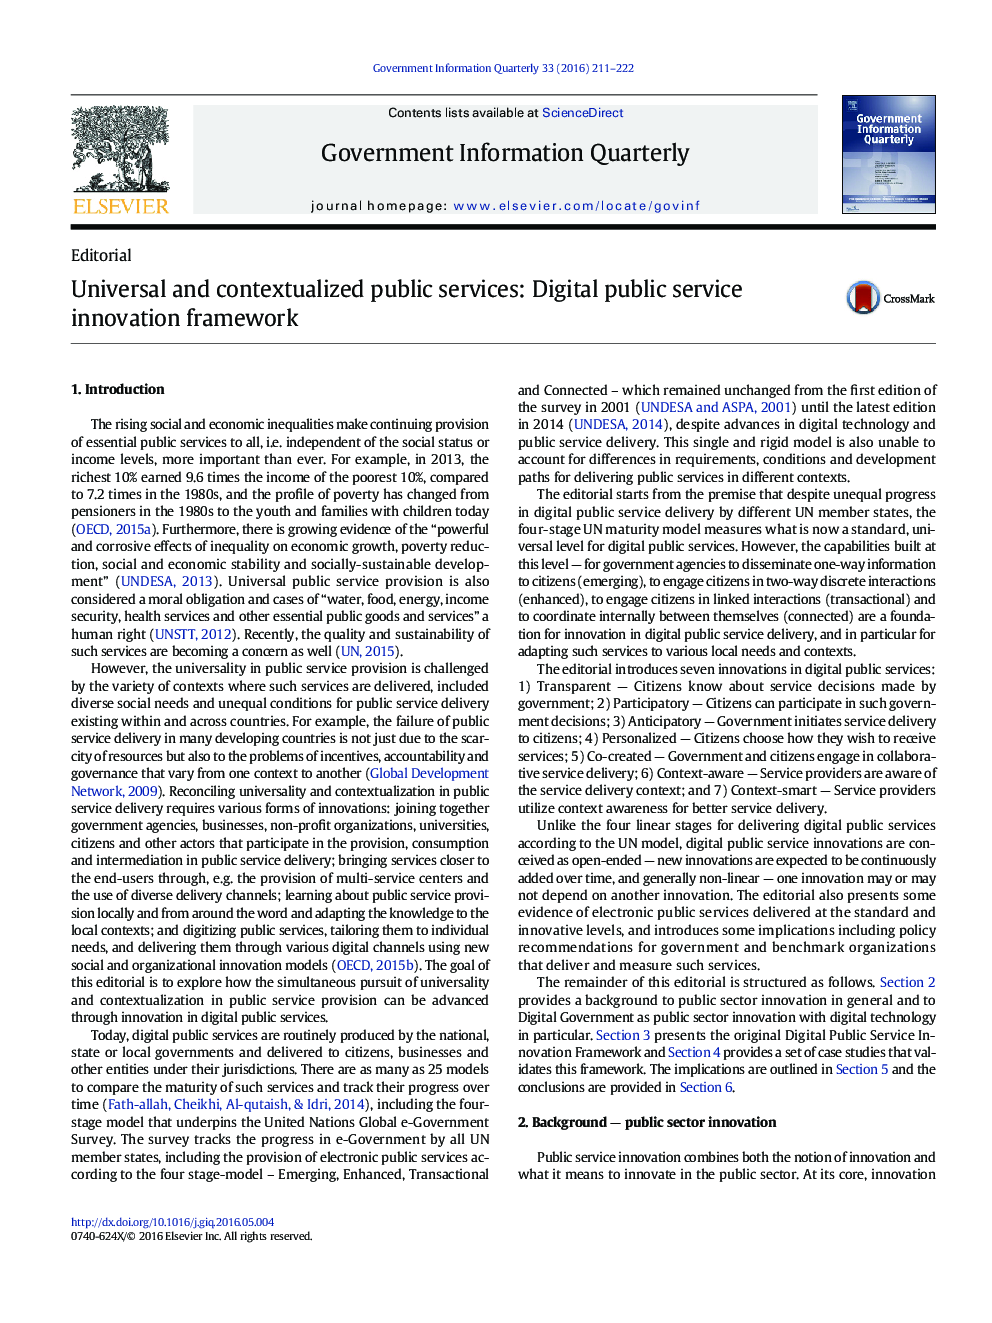 خدمات جهانی و خدمات عمومی مفهوم‌سازی شده: چارچوب نوآوری خدمات عمومی دیجیتال 